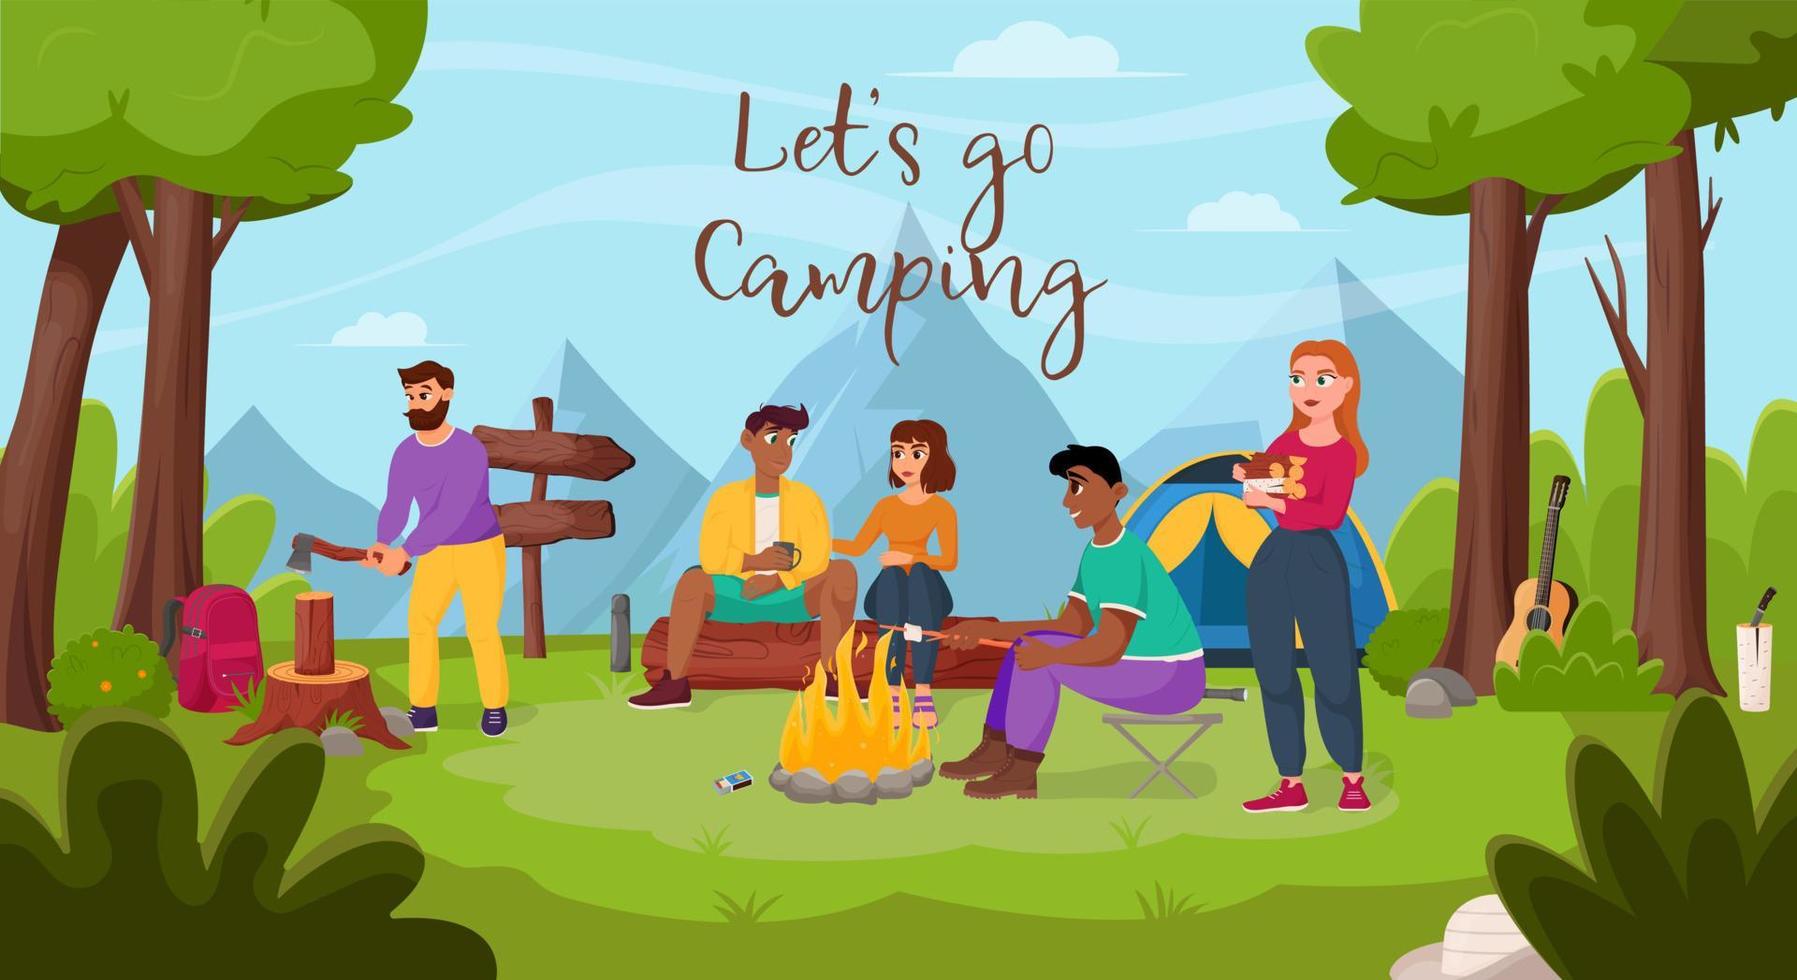 los amigos se relajan en la naturaleza. camping de verano, senderismo, camper, concepto de tiempo de aventura. ilustración de vector plano para cartel, pancarta, volante